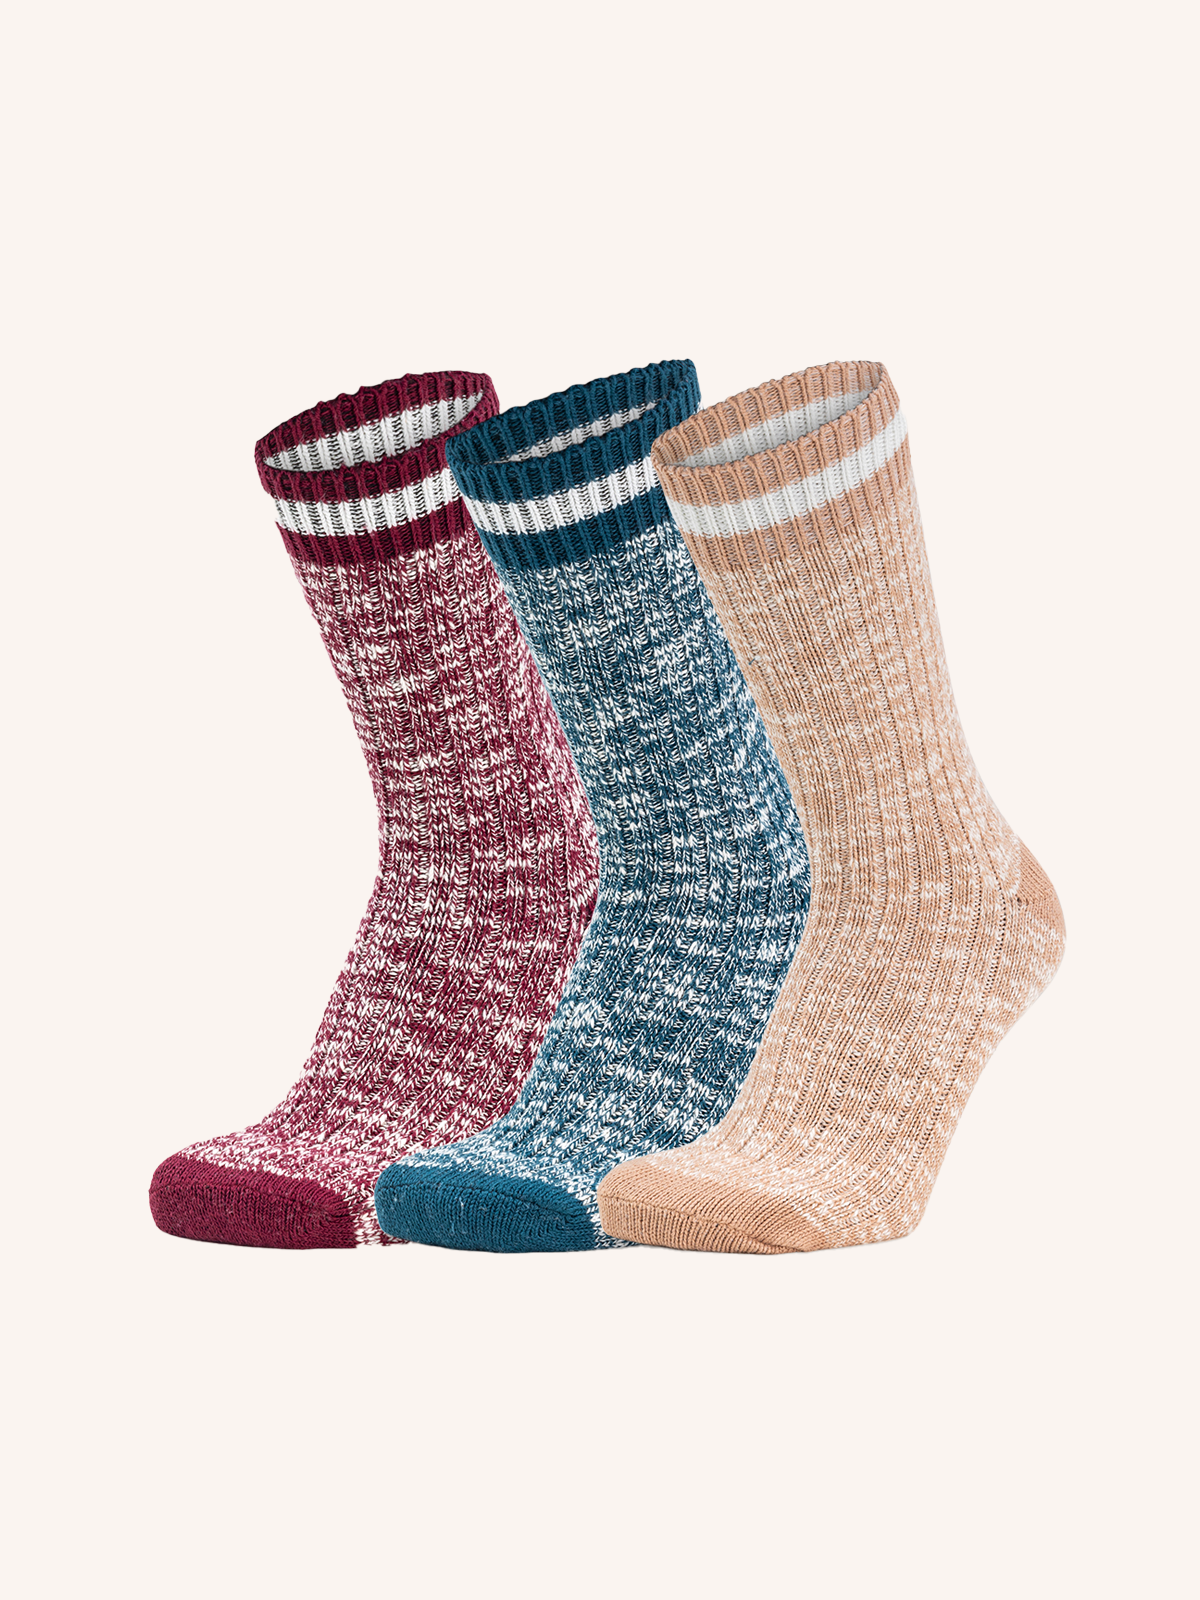 Girls' Socks, Plain & Patterned